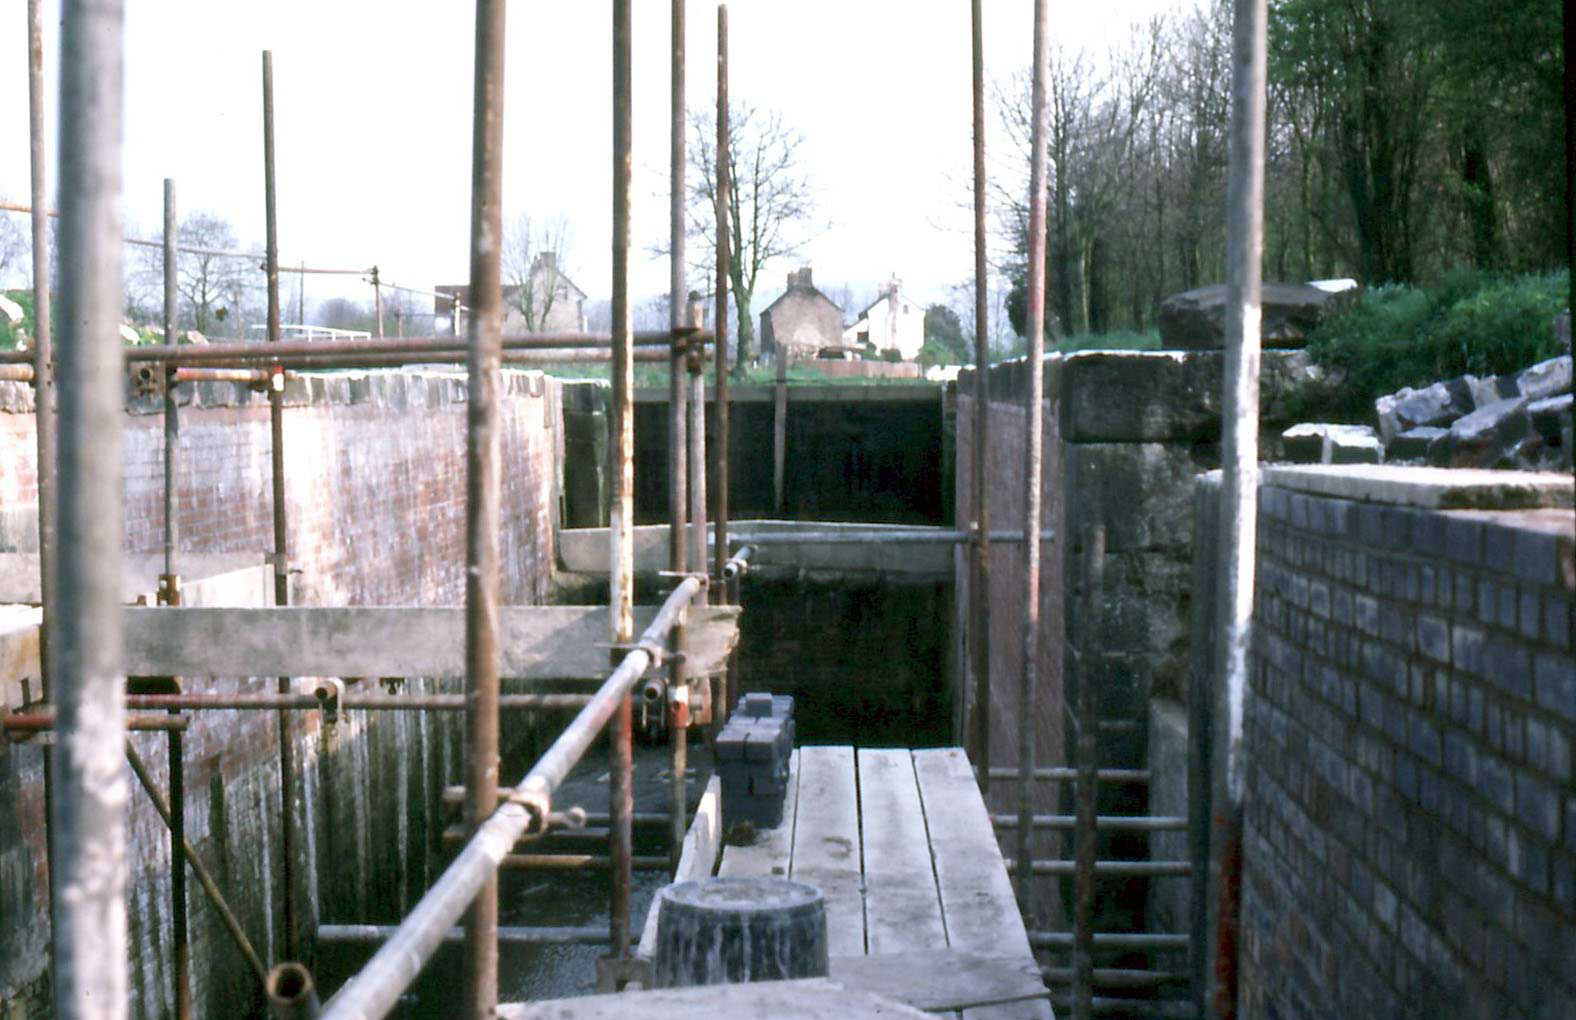 Newtown lock under restoration 1988 (CCT)